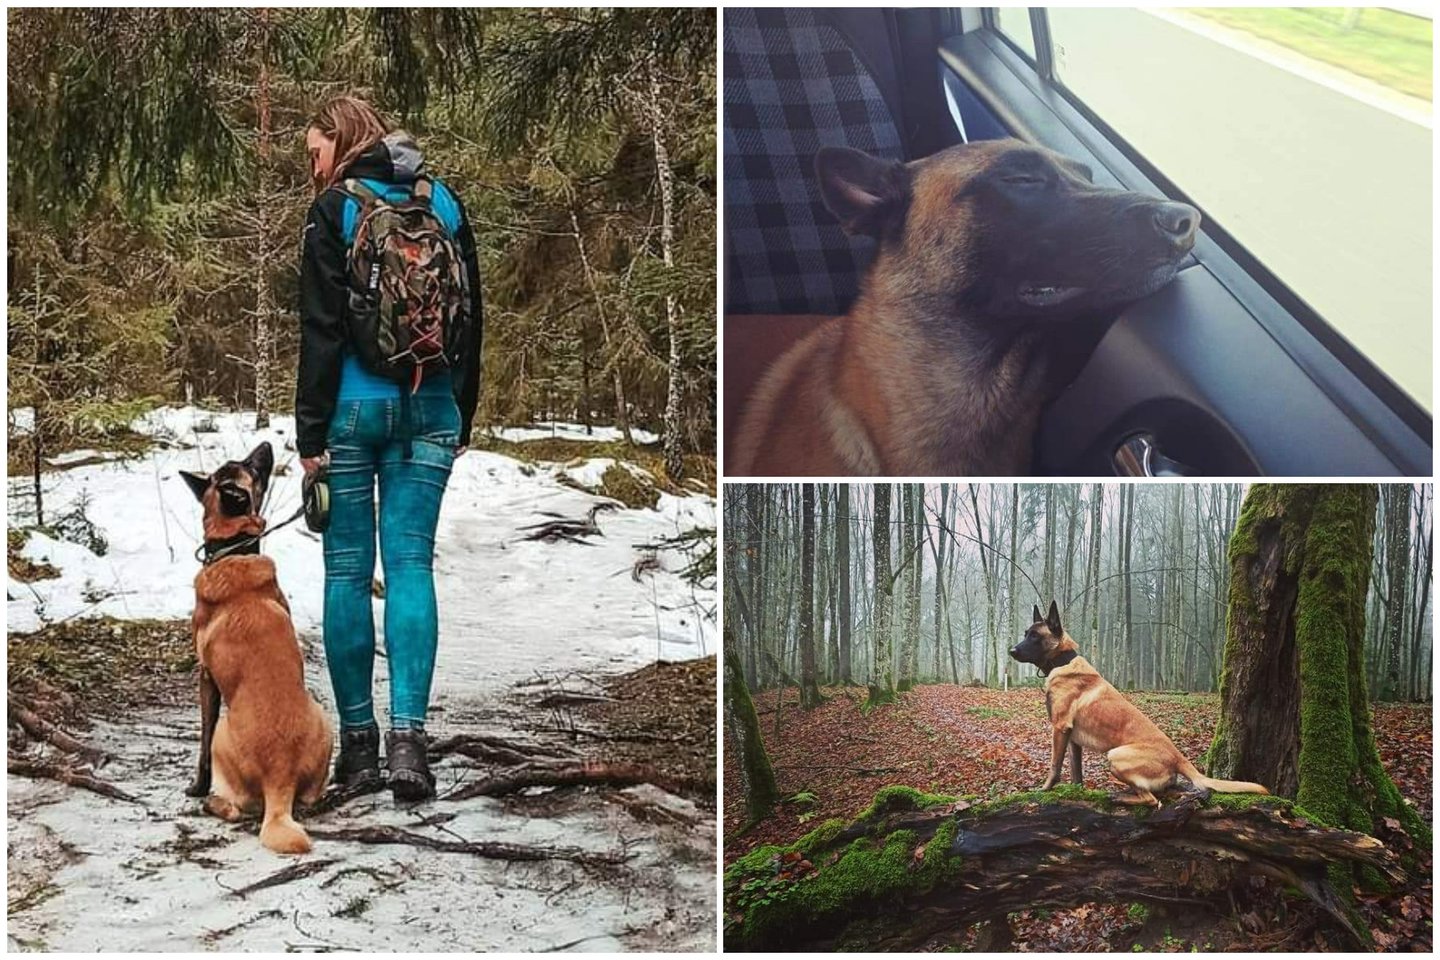  Toma Neuronytė augina penkerių metų belgų aviganį (malinua) – ištvermingą, stiprų ir daug energijos turintį šunį, vardu Dolcis.<br> Asmeninio archyvo nuotr.